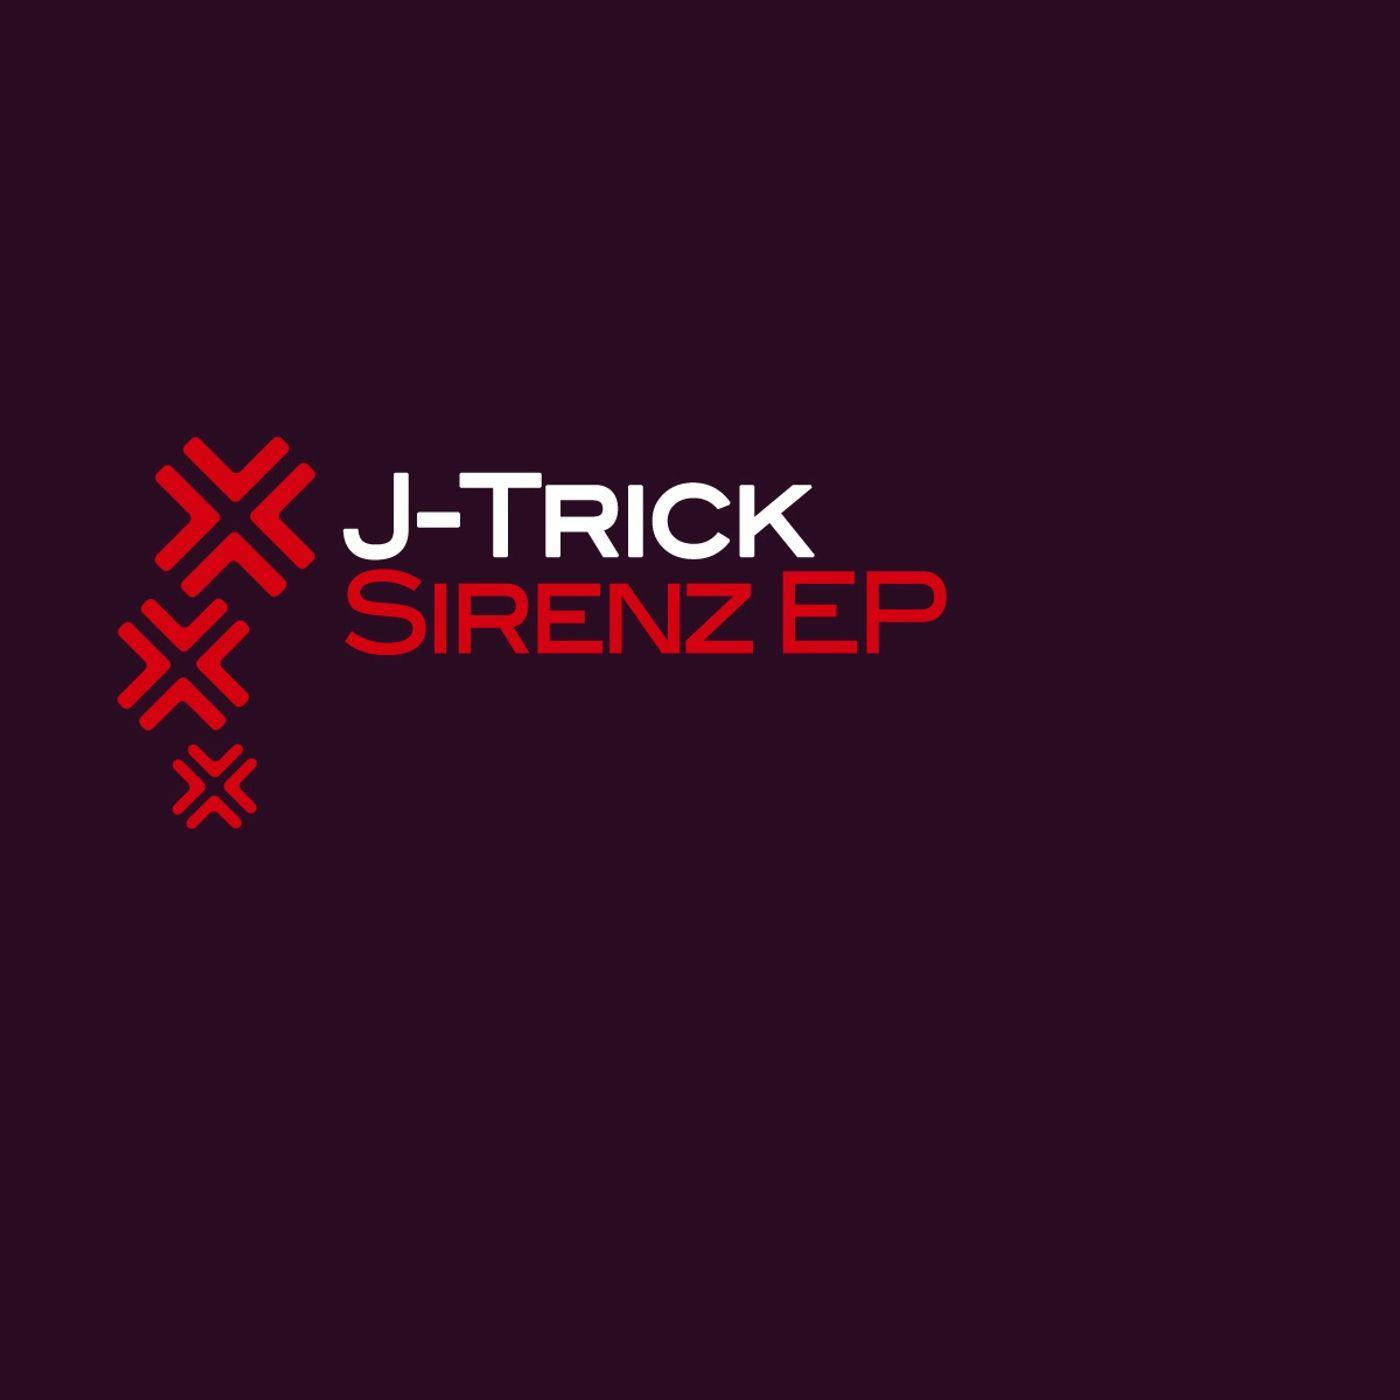 Sirenz EP